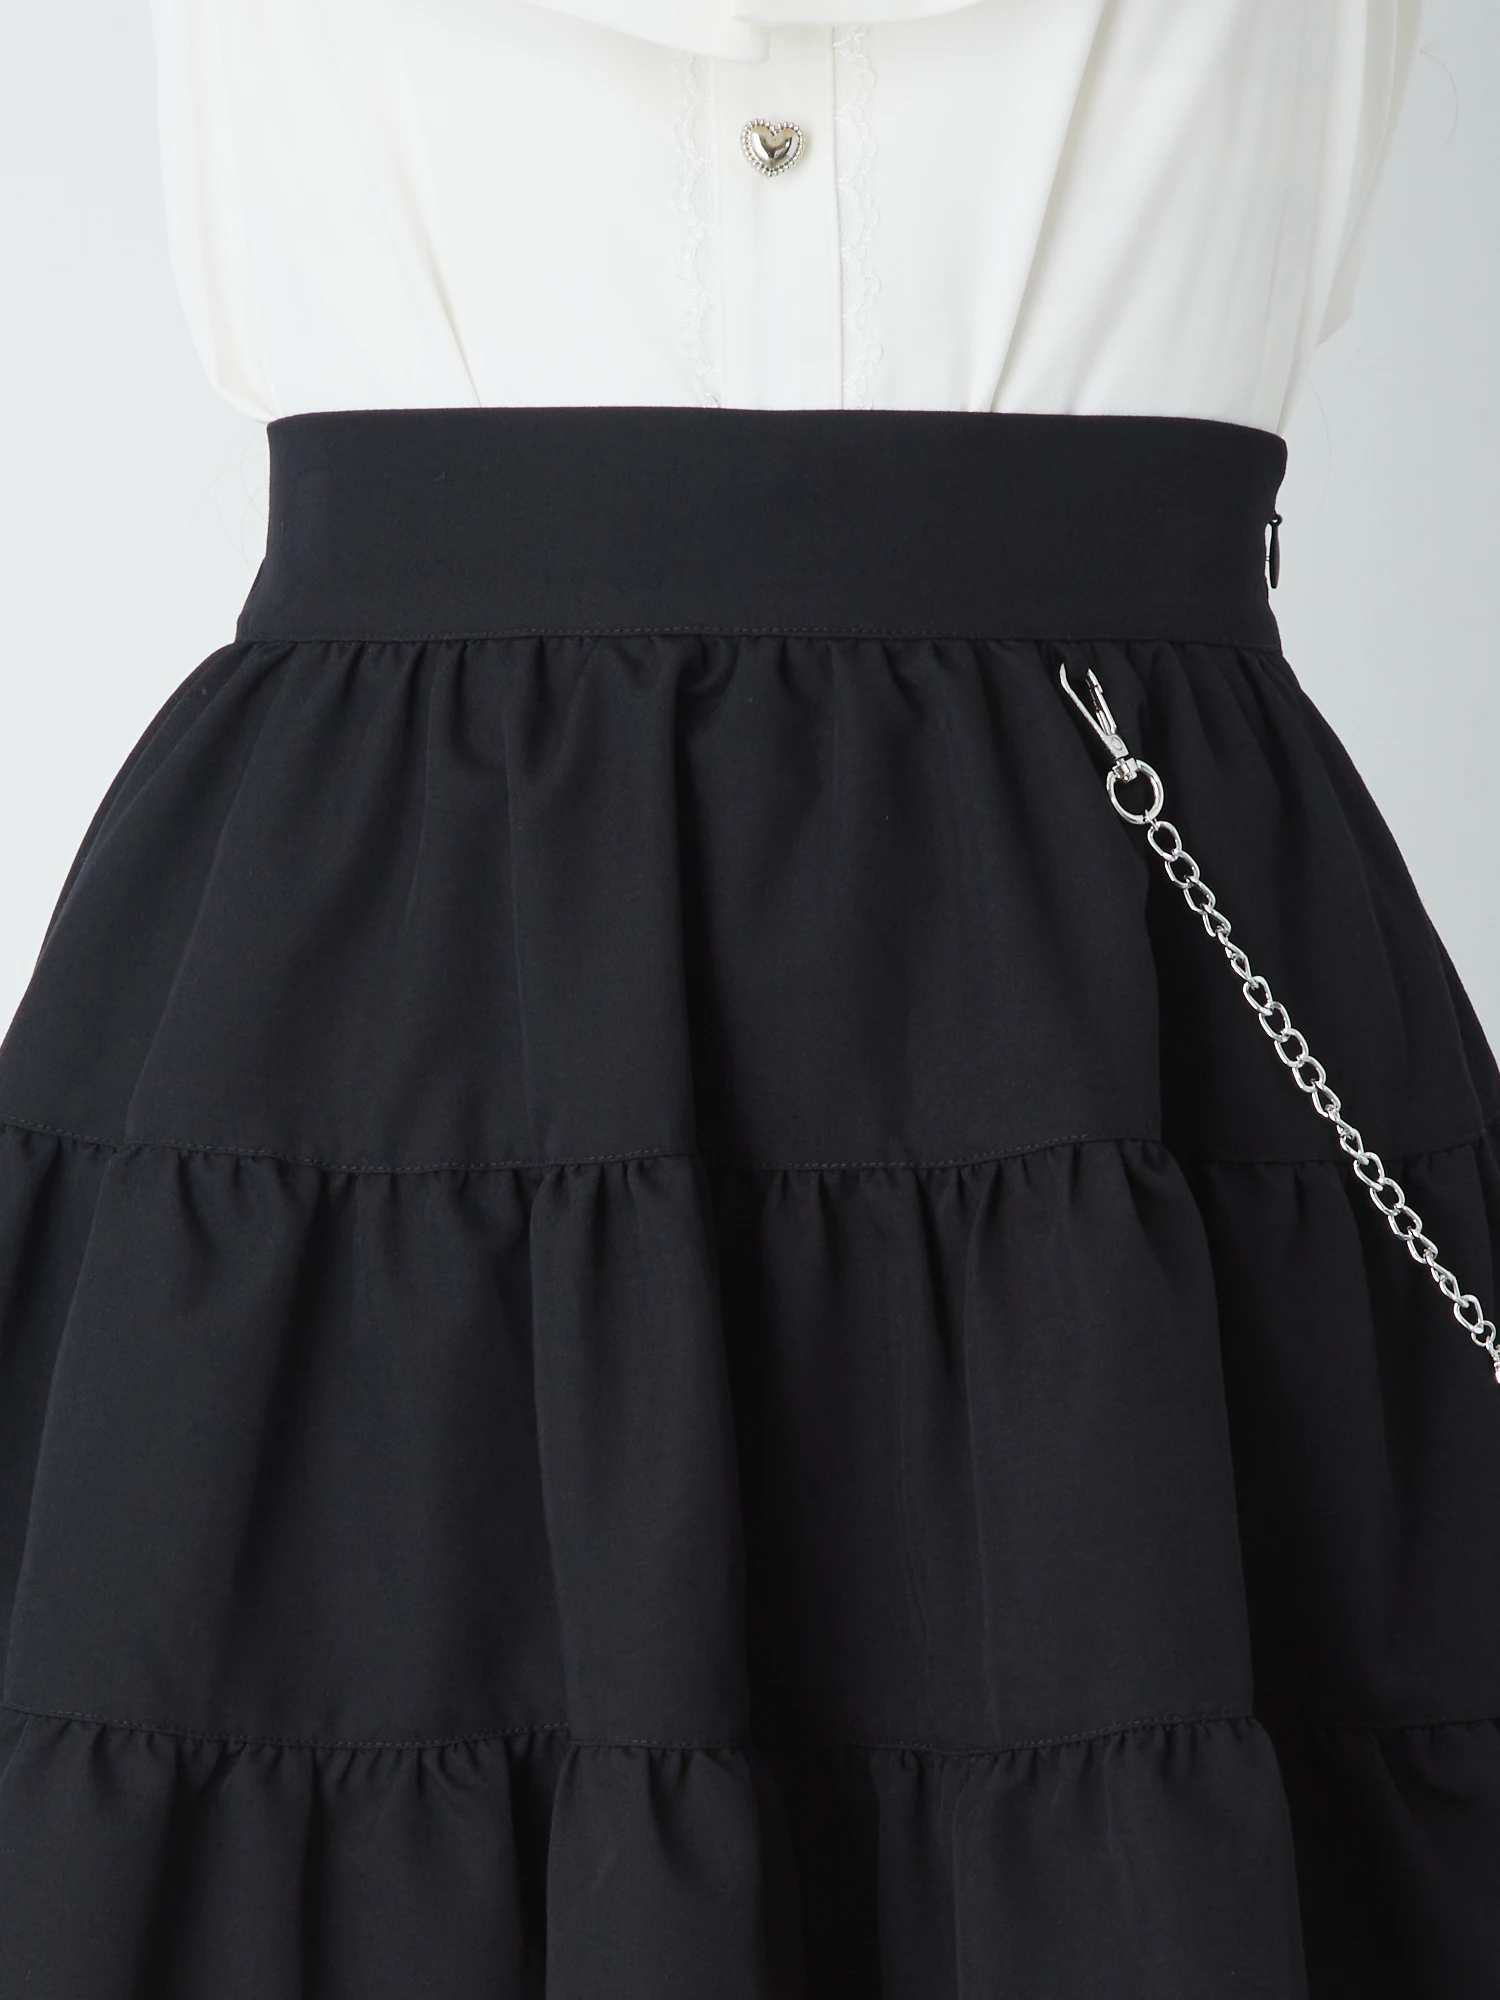 チェーン付きティアードSK - Ank Rouge(アンクルージュ)のスカート 